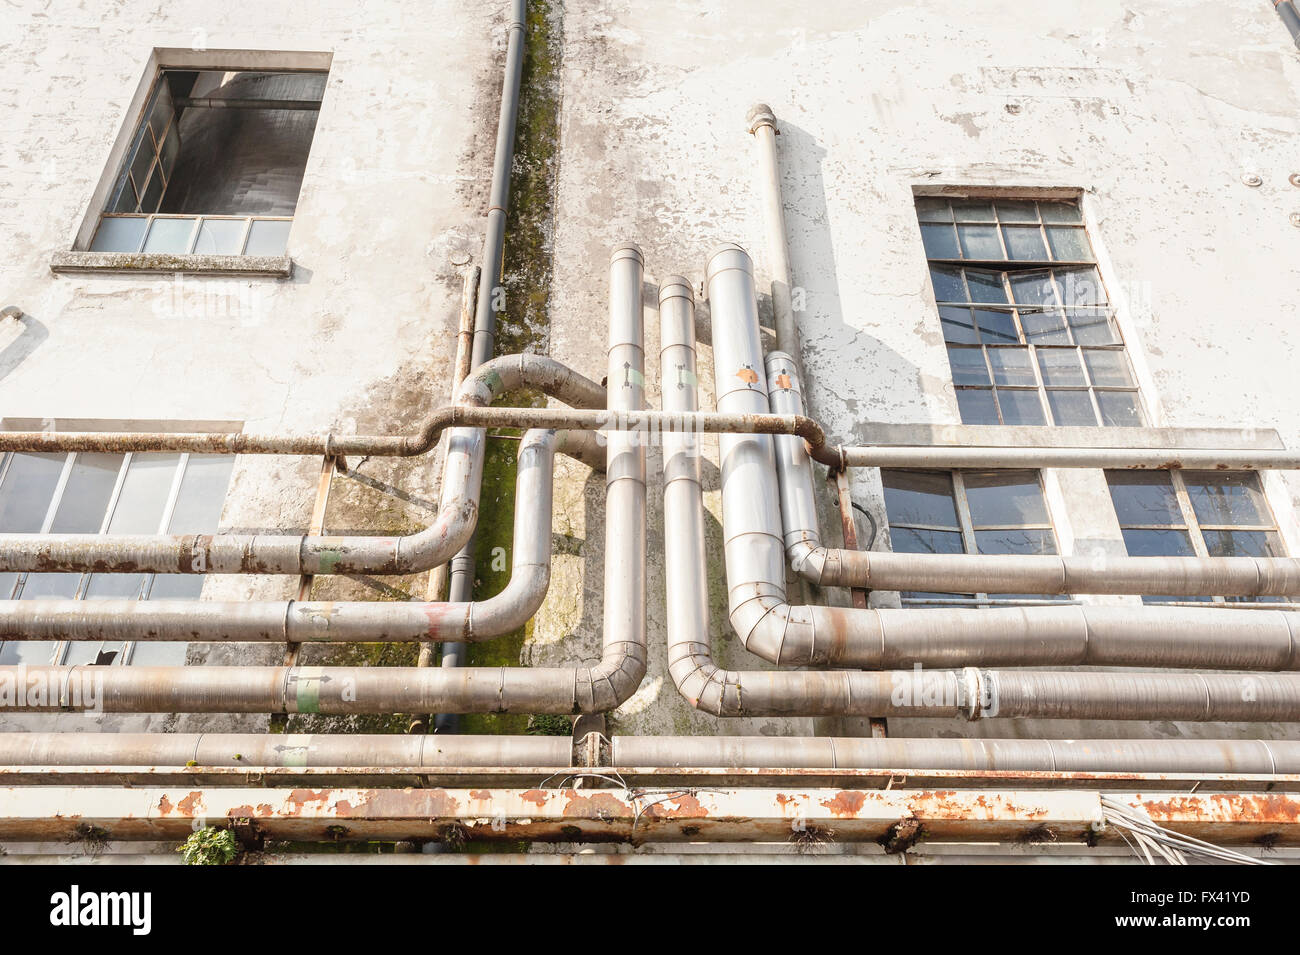 Los tubos viejos en la pared exterior de una vieja fábrica abandonada. Foto de stock